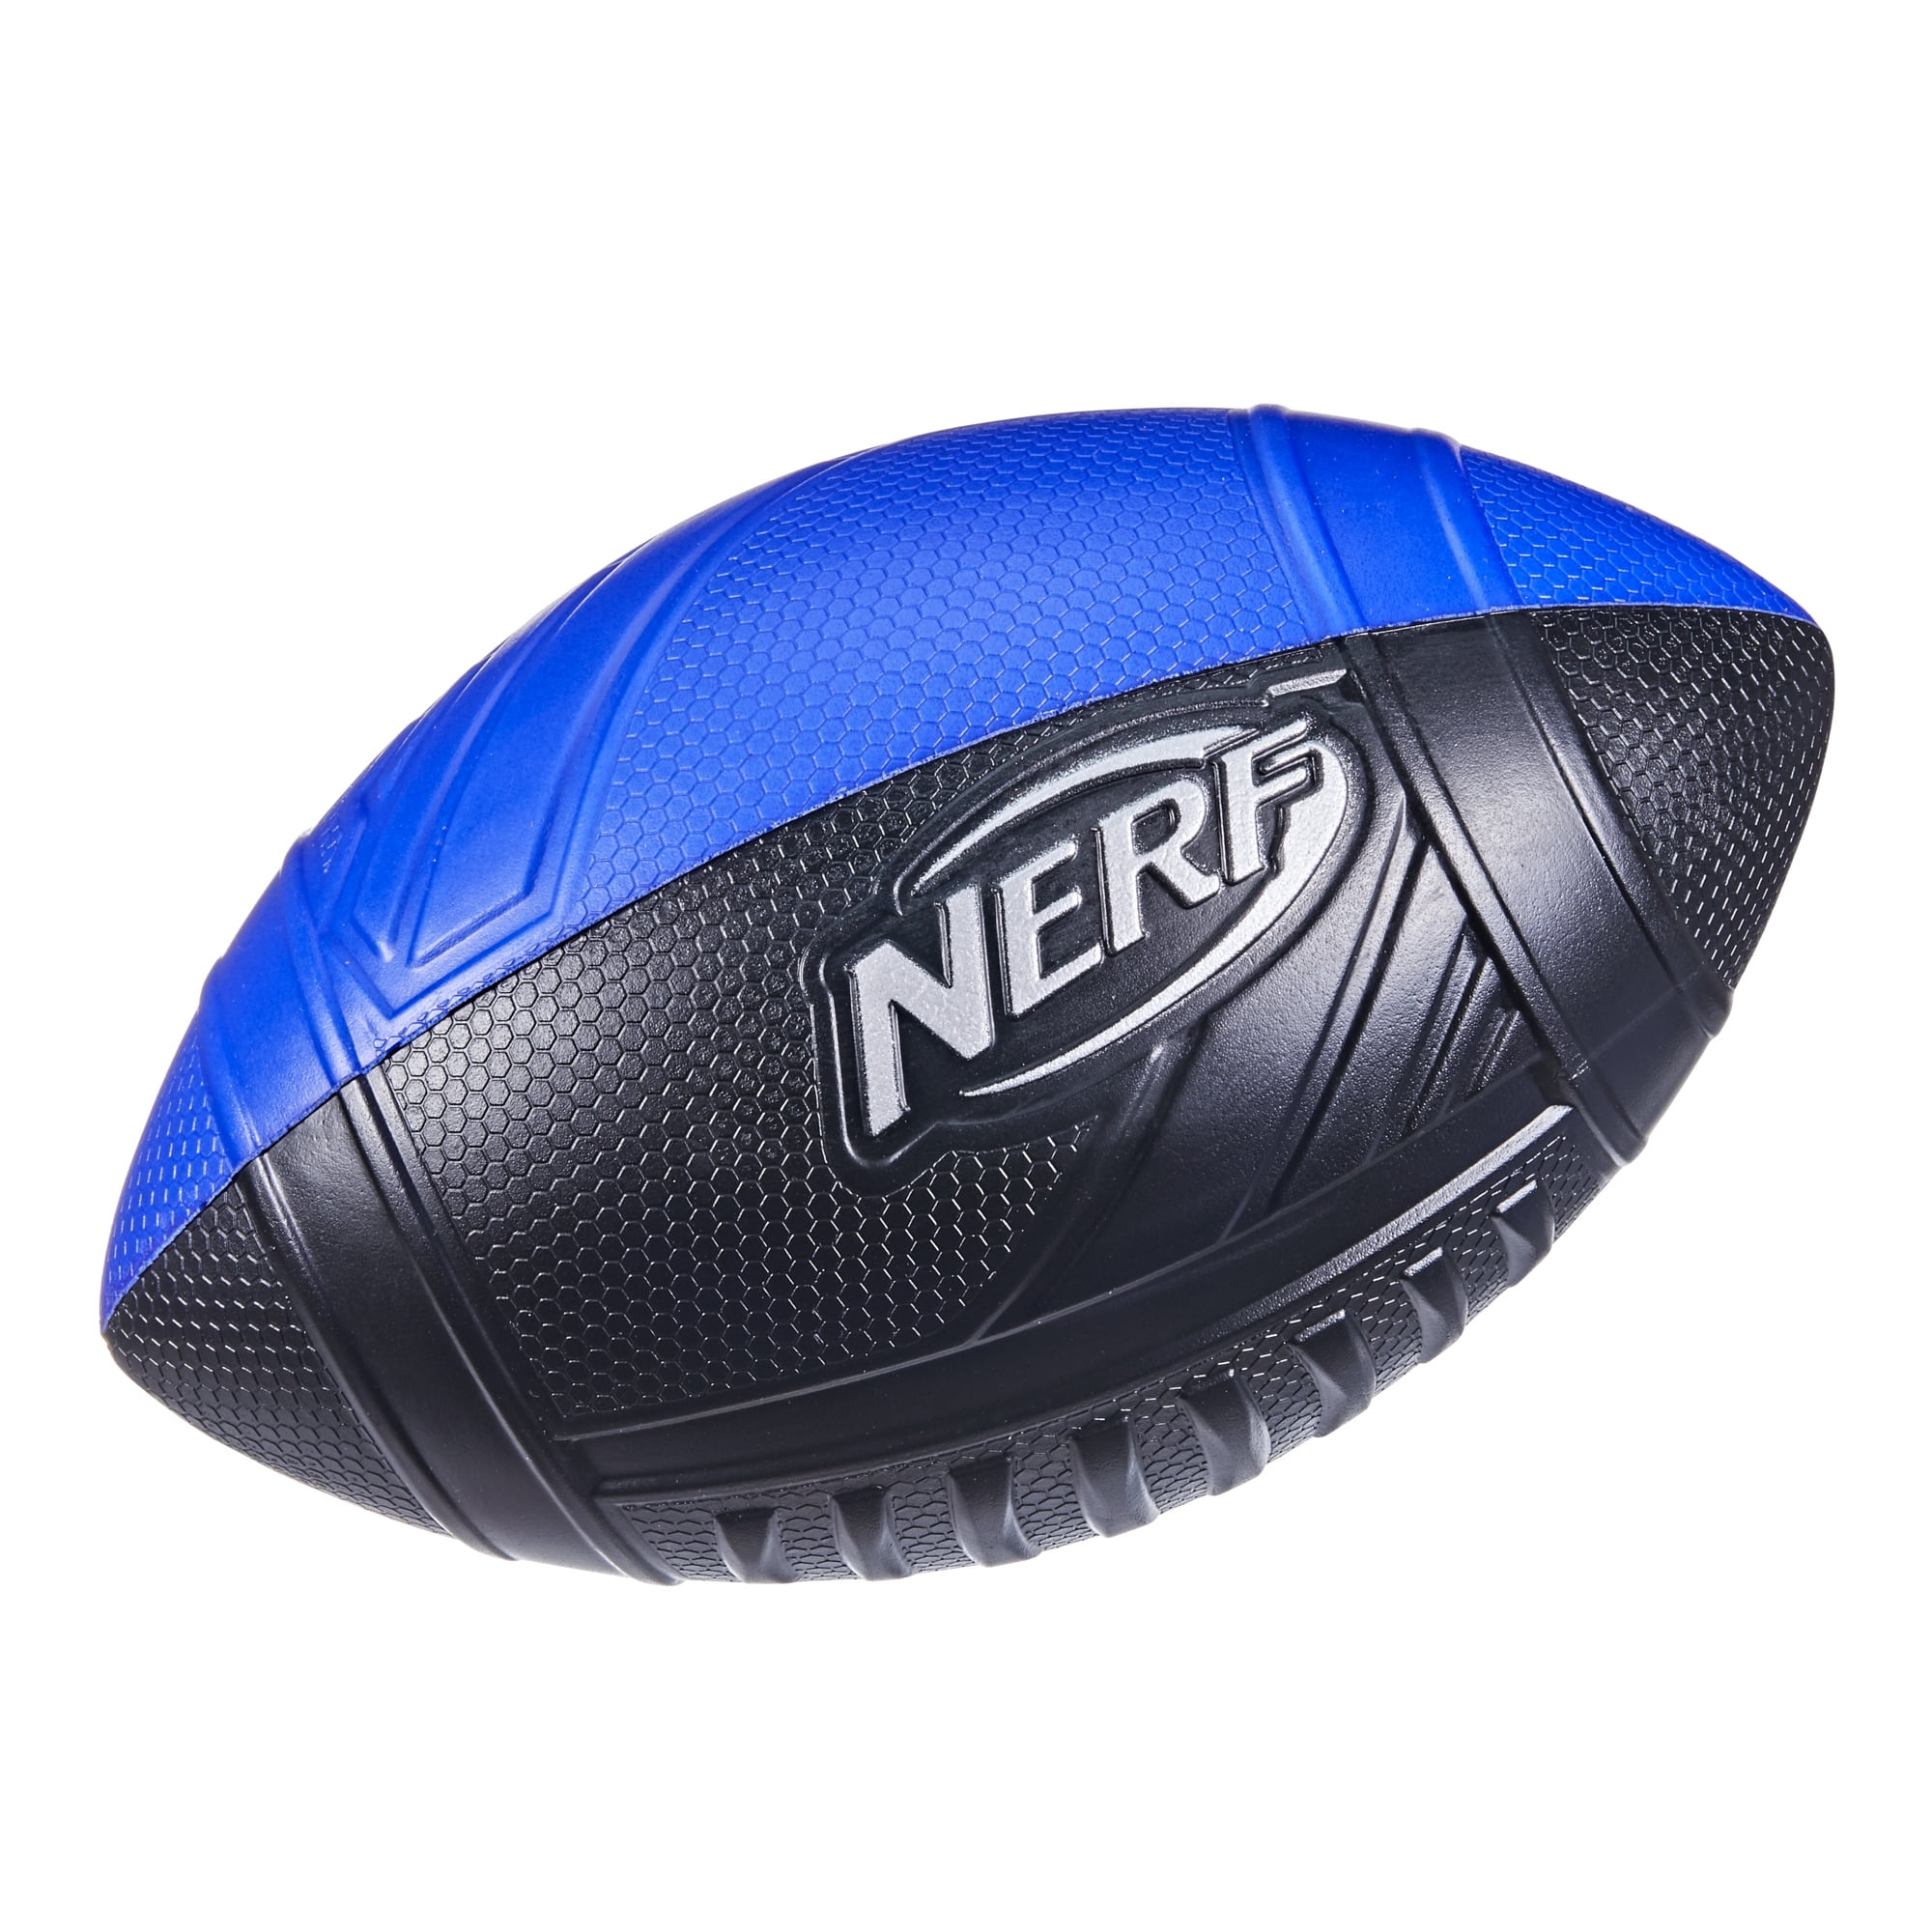 Nerf Vortex Aero Howler fun garden park throwing game whistle throw ball toy 